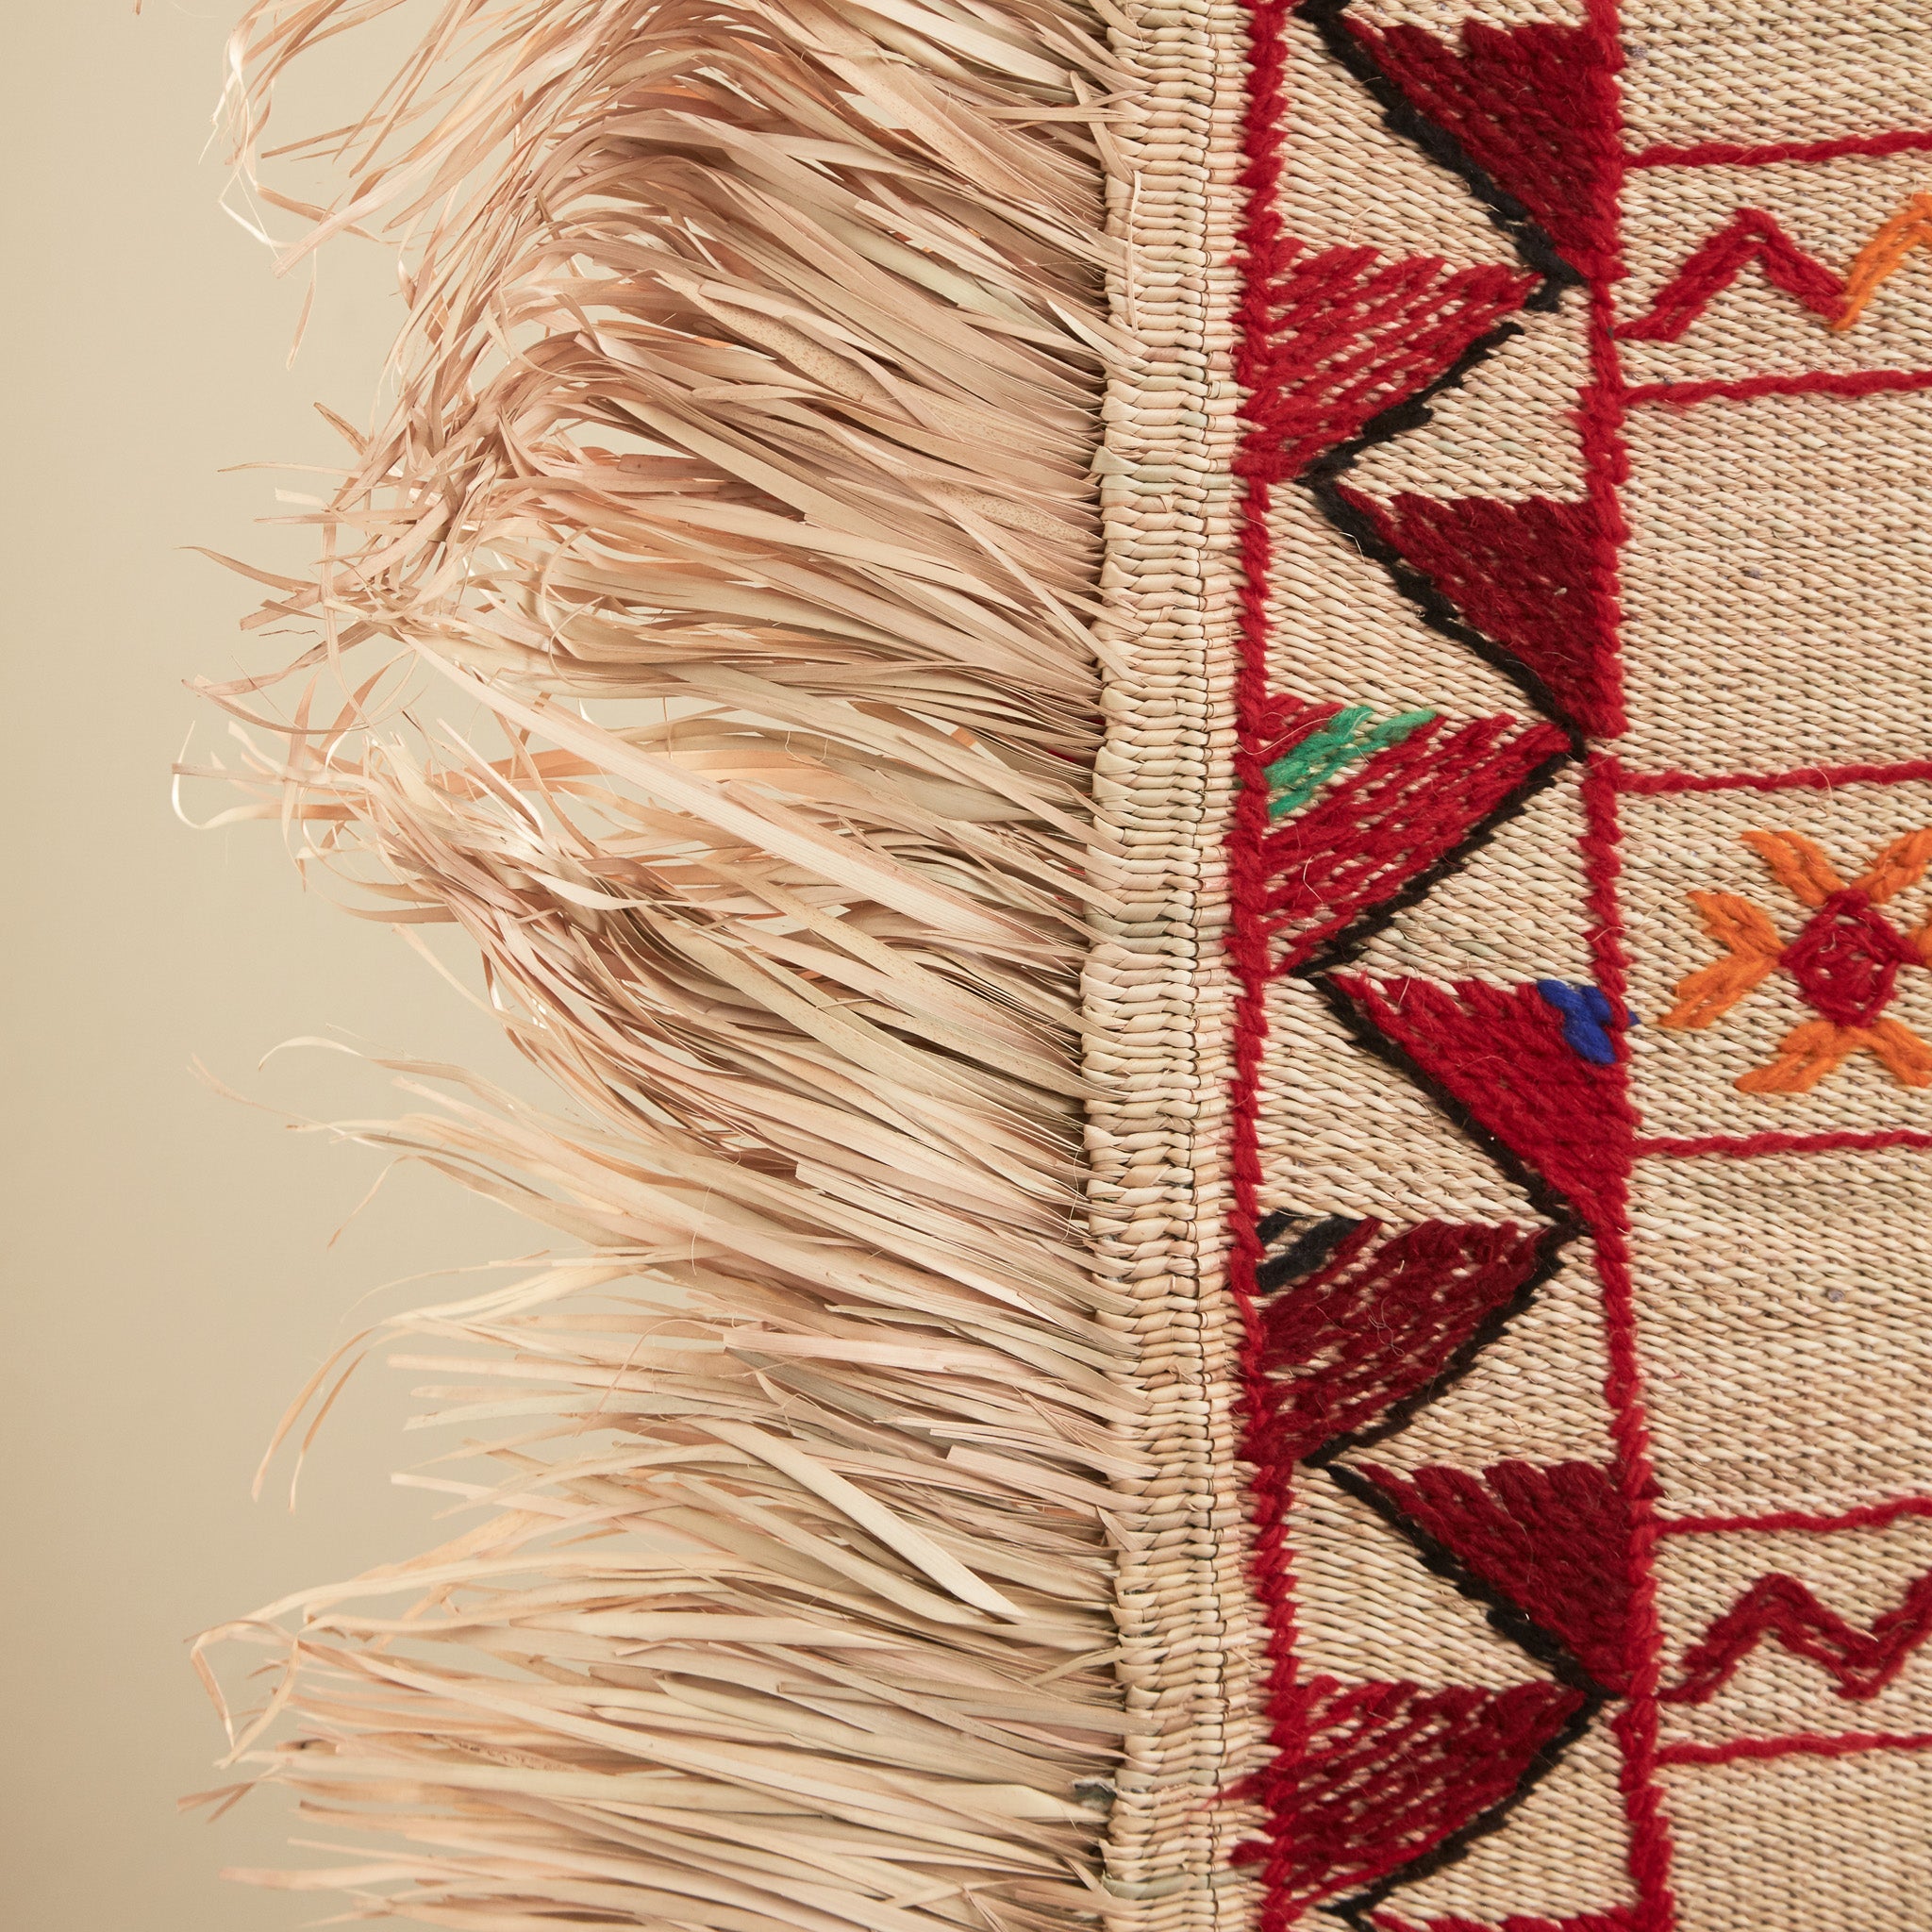 dettaglio della frangia in paglia del ricamo di una stuoia tappeto in paglia hassira grande in paglia di palma e ricami in lana